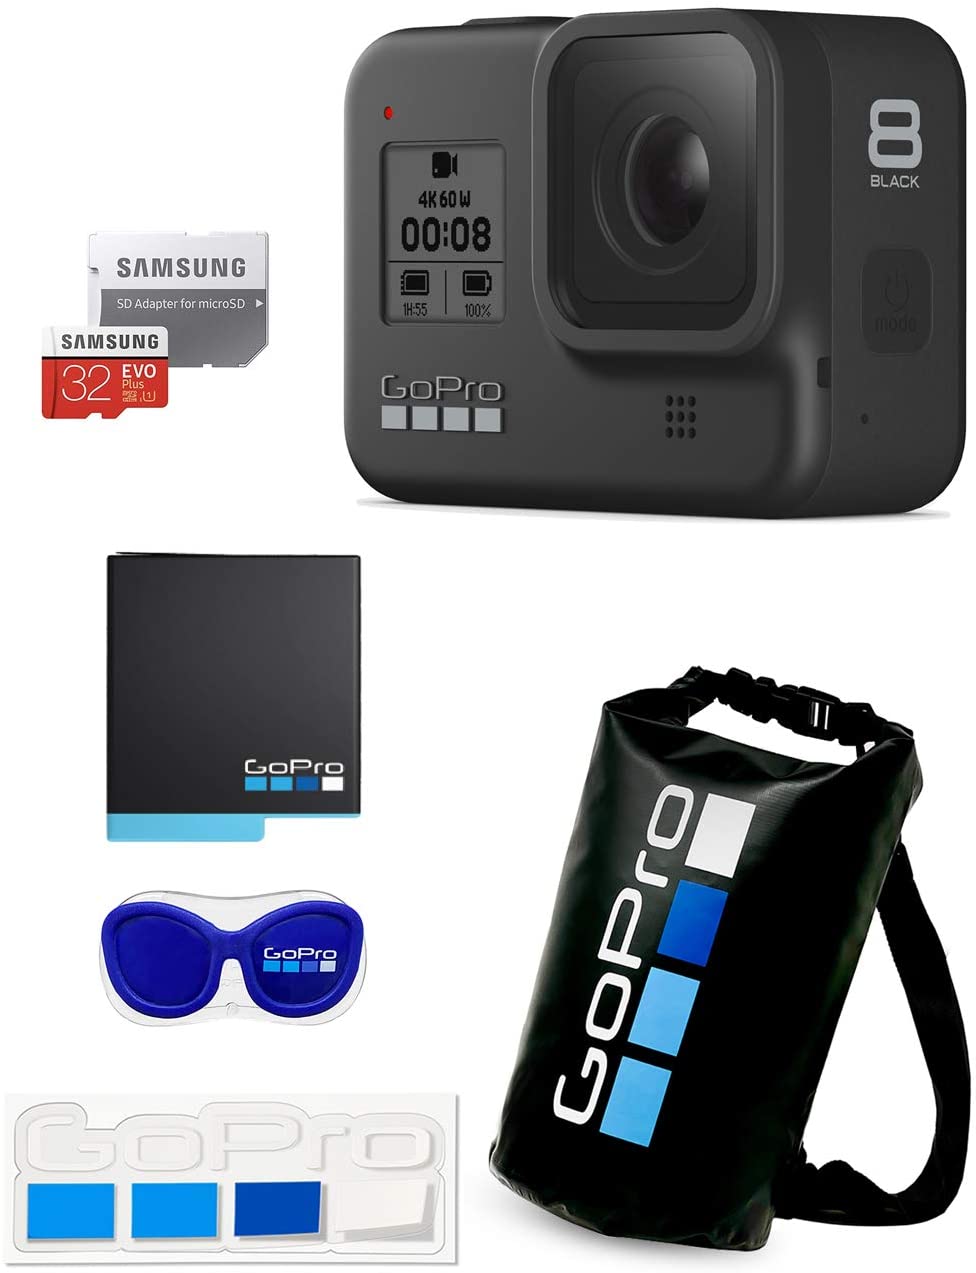 【楽天市場】VYPER JAPAN GoPro HERO8 Black CHDHX-801-FW +予備バッテリー +認定microSDカード32GB +メガホルダー(青)&ドライバッグ